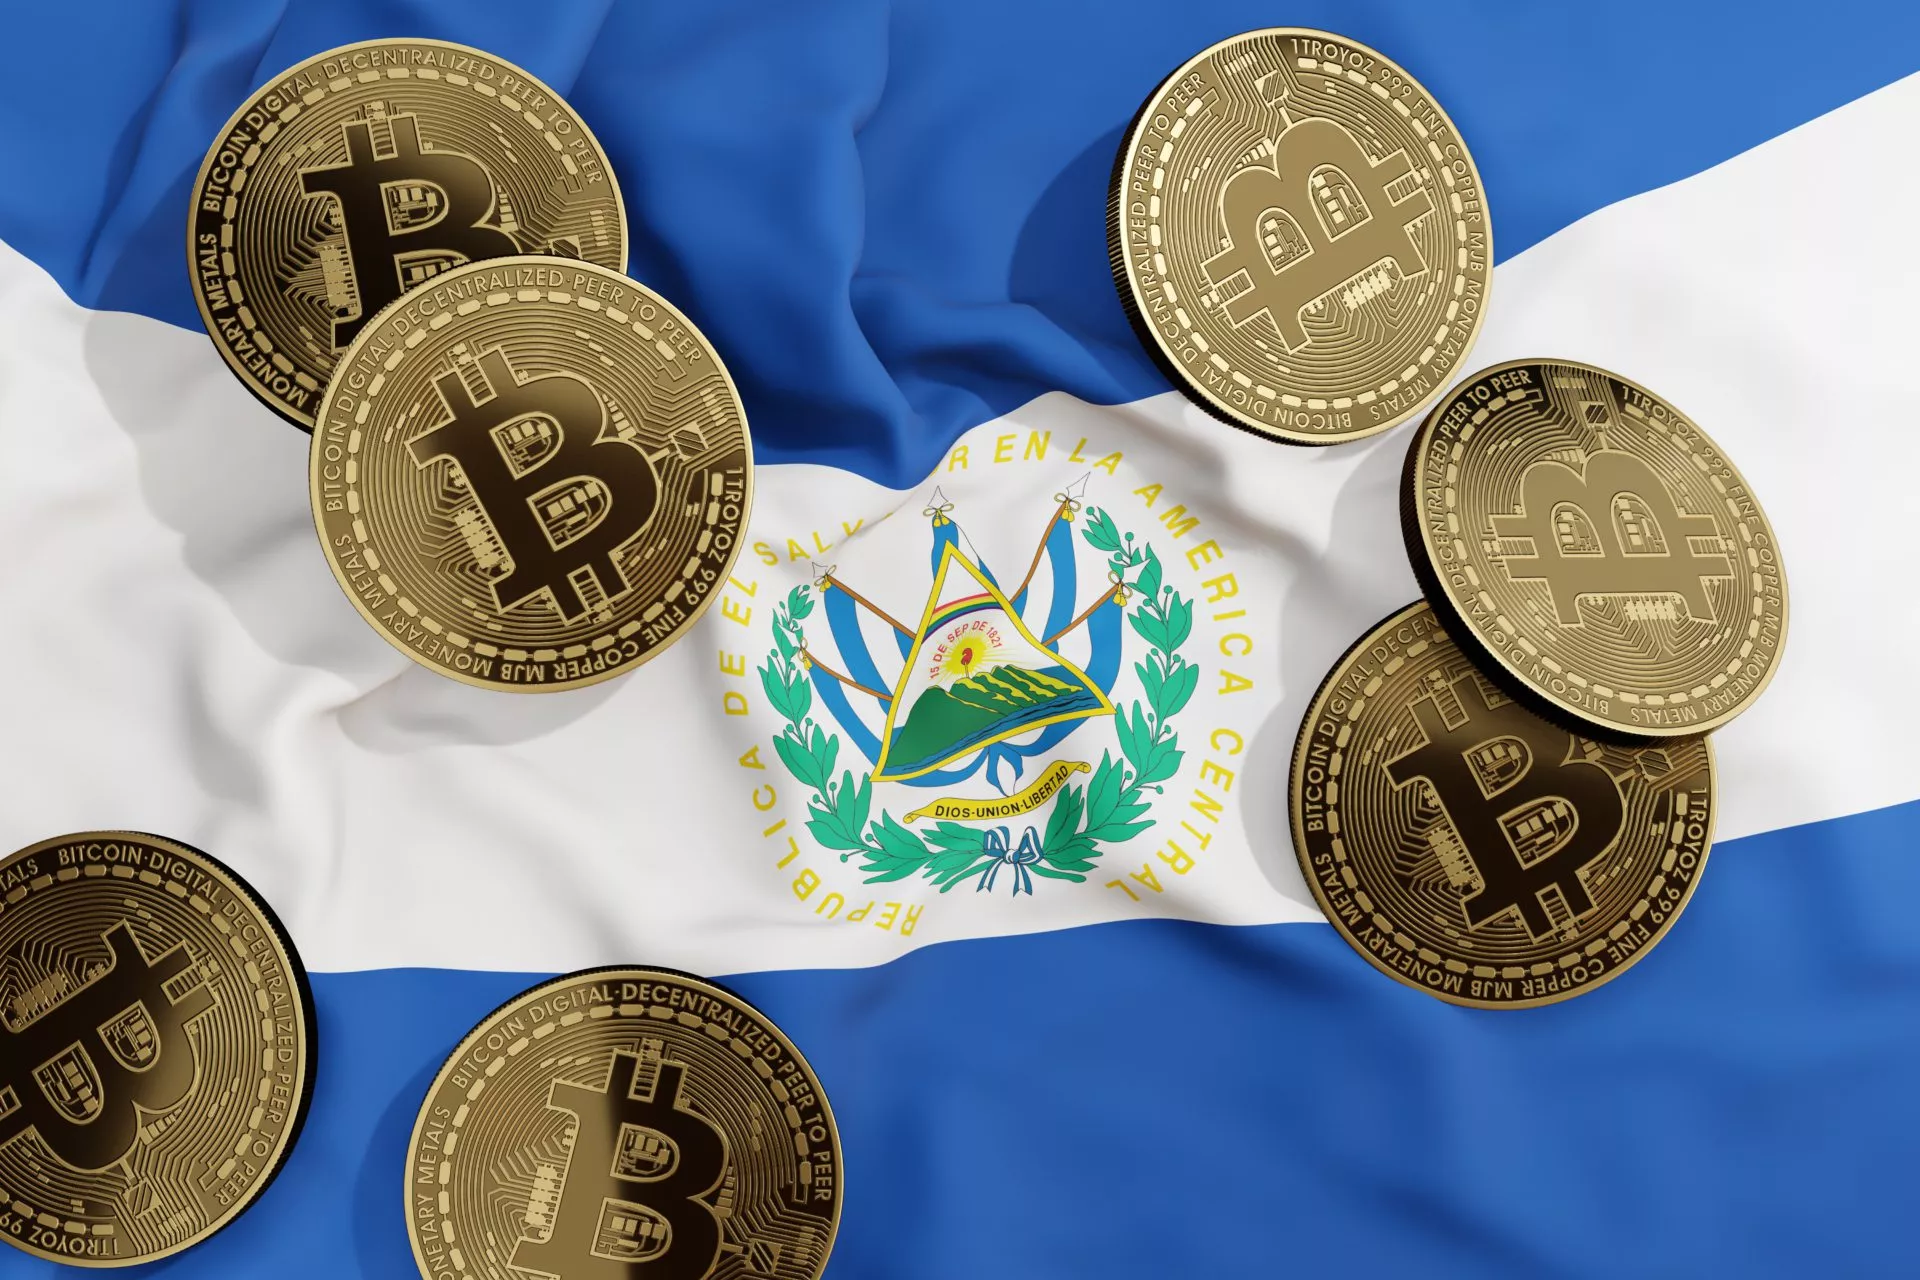 Auteur van ‘The Bitcoin Standard’ wordt economisch adviseur van El Salvador